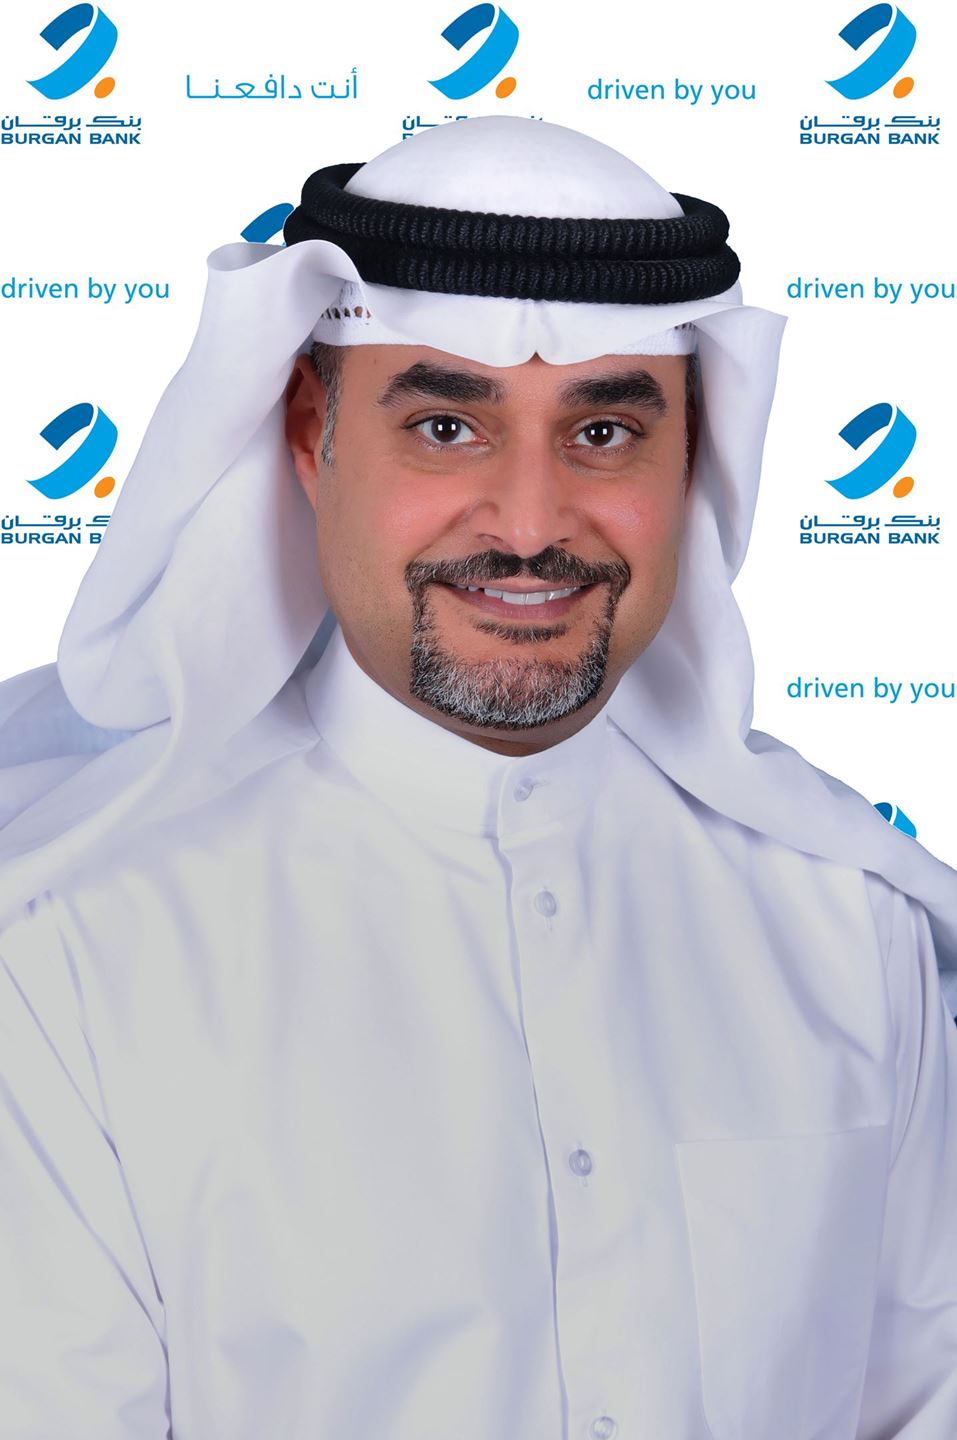 Mr. Raed Abdullah Al-Haqhaq, Deputy Group Chief Executive Officer & CEO – Kuwait at Burgan Bank